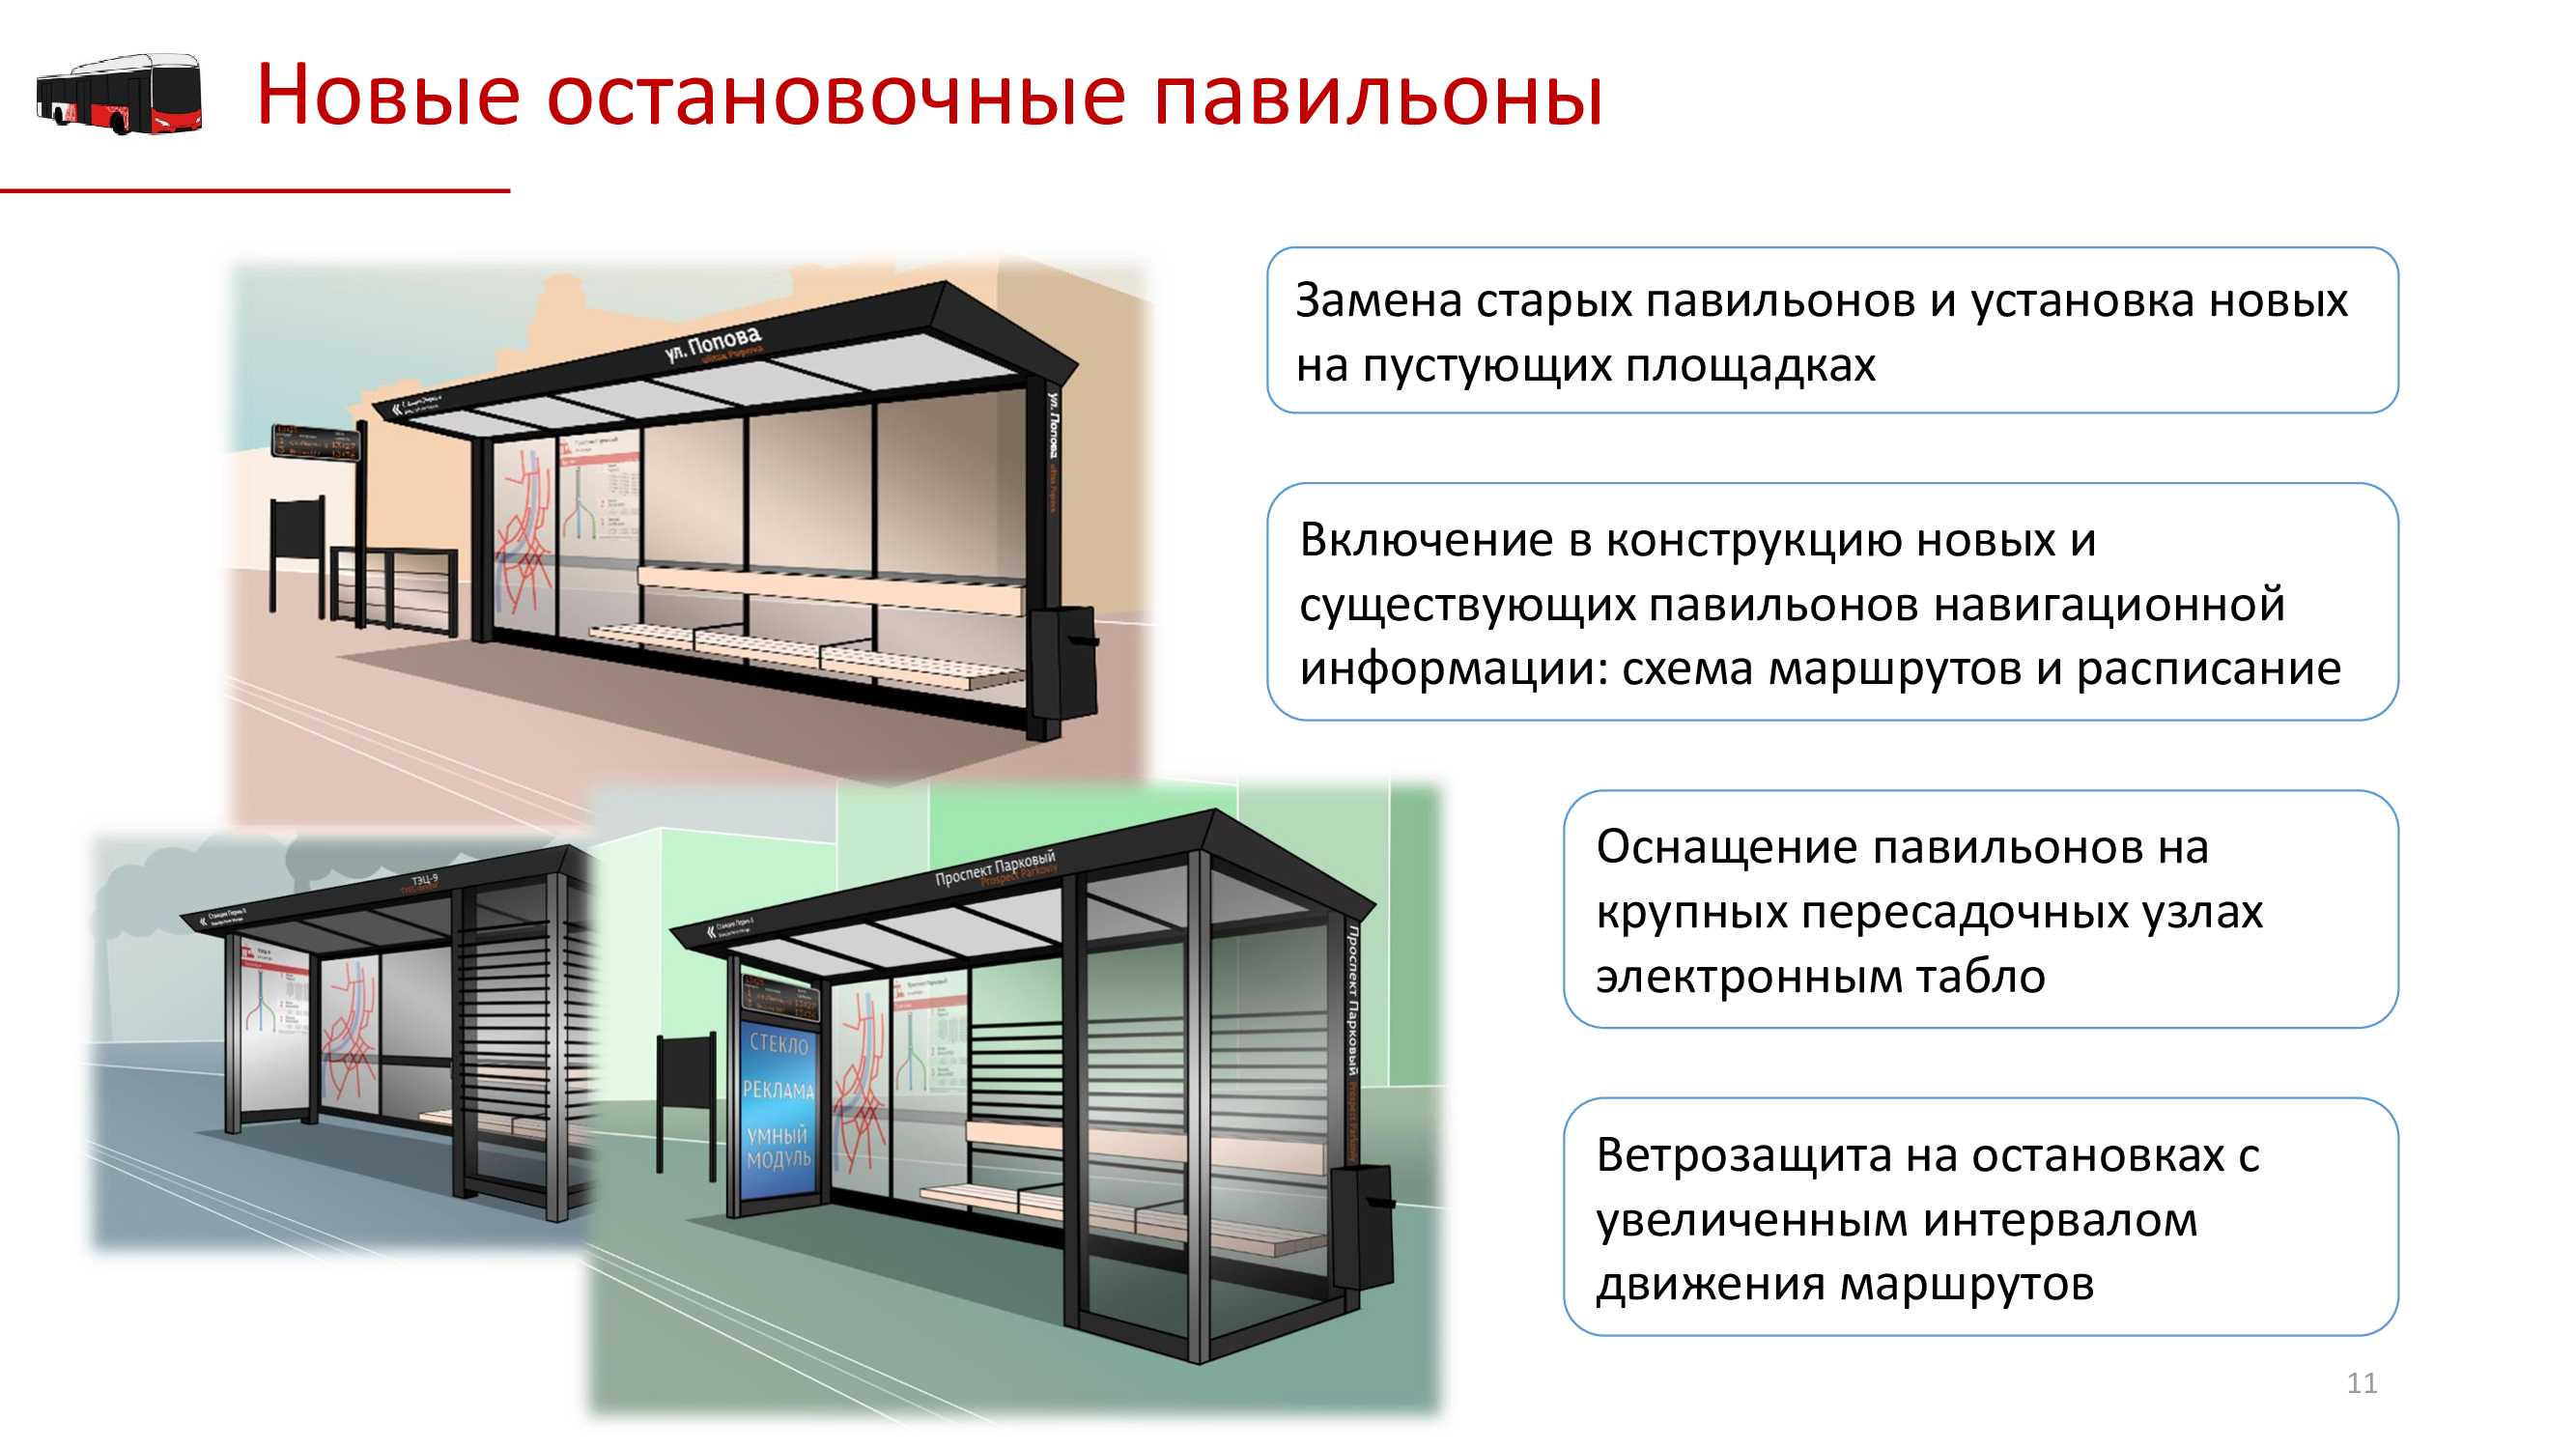 Концепт дизайна новых остановочных павильонов Перми